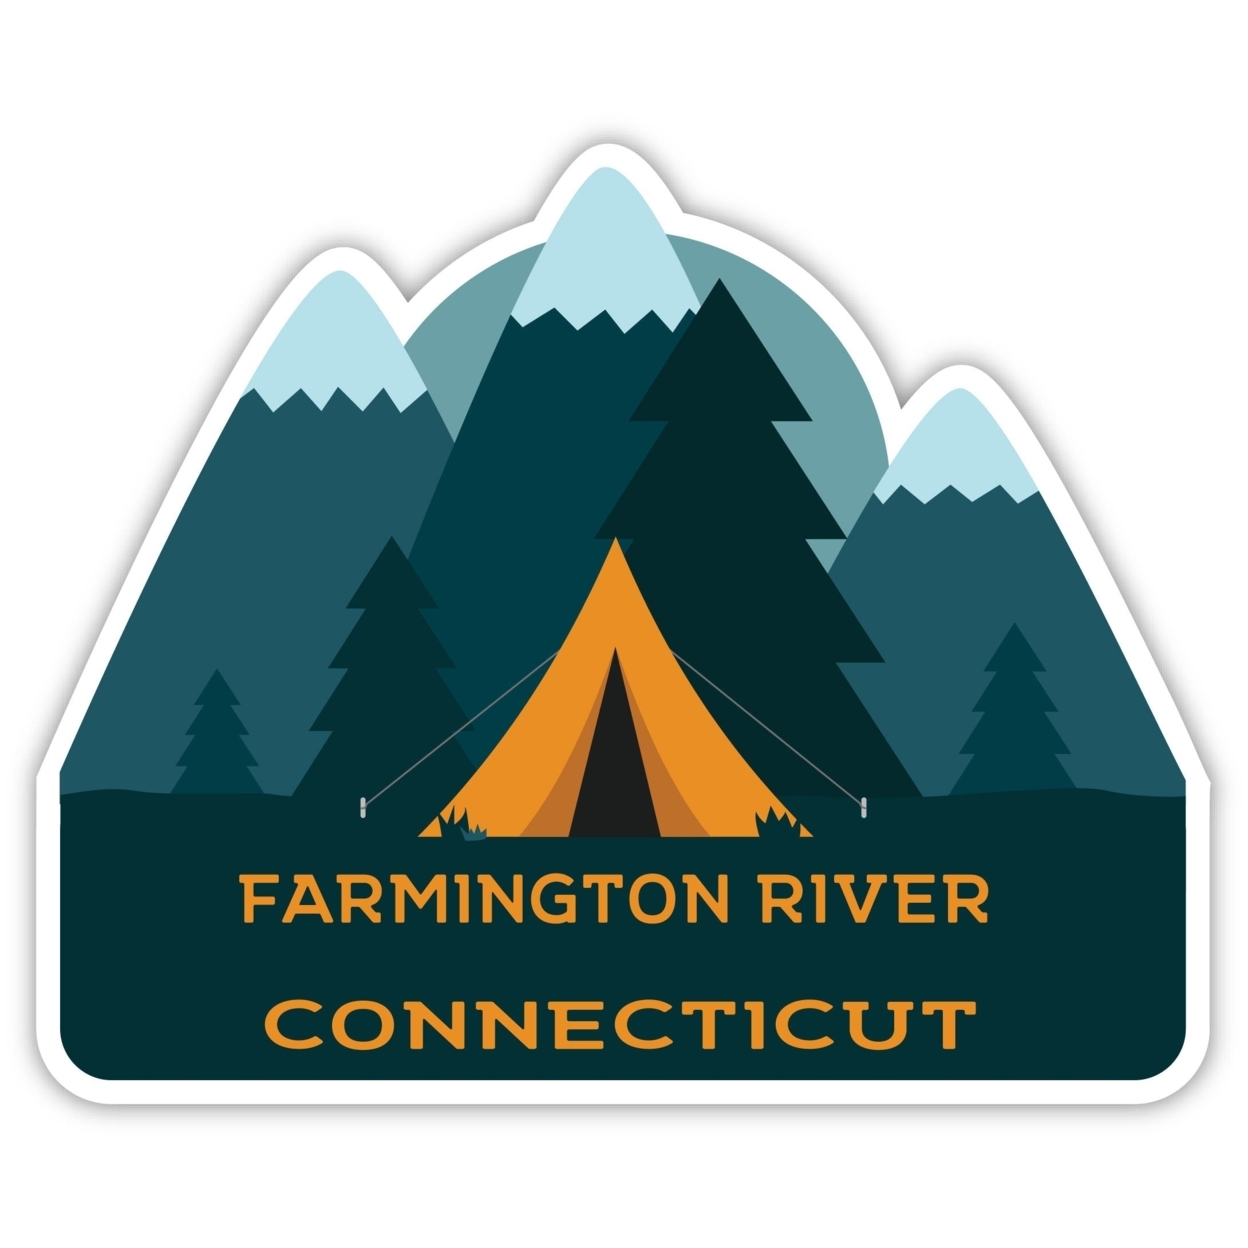 Farmington River Connecticut Souvenir Decorative Stickers (Choose Theme And Size) - Single Unit, 8-Inch, Tent